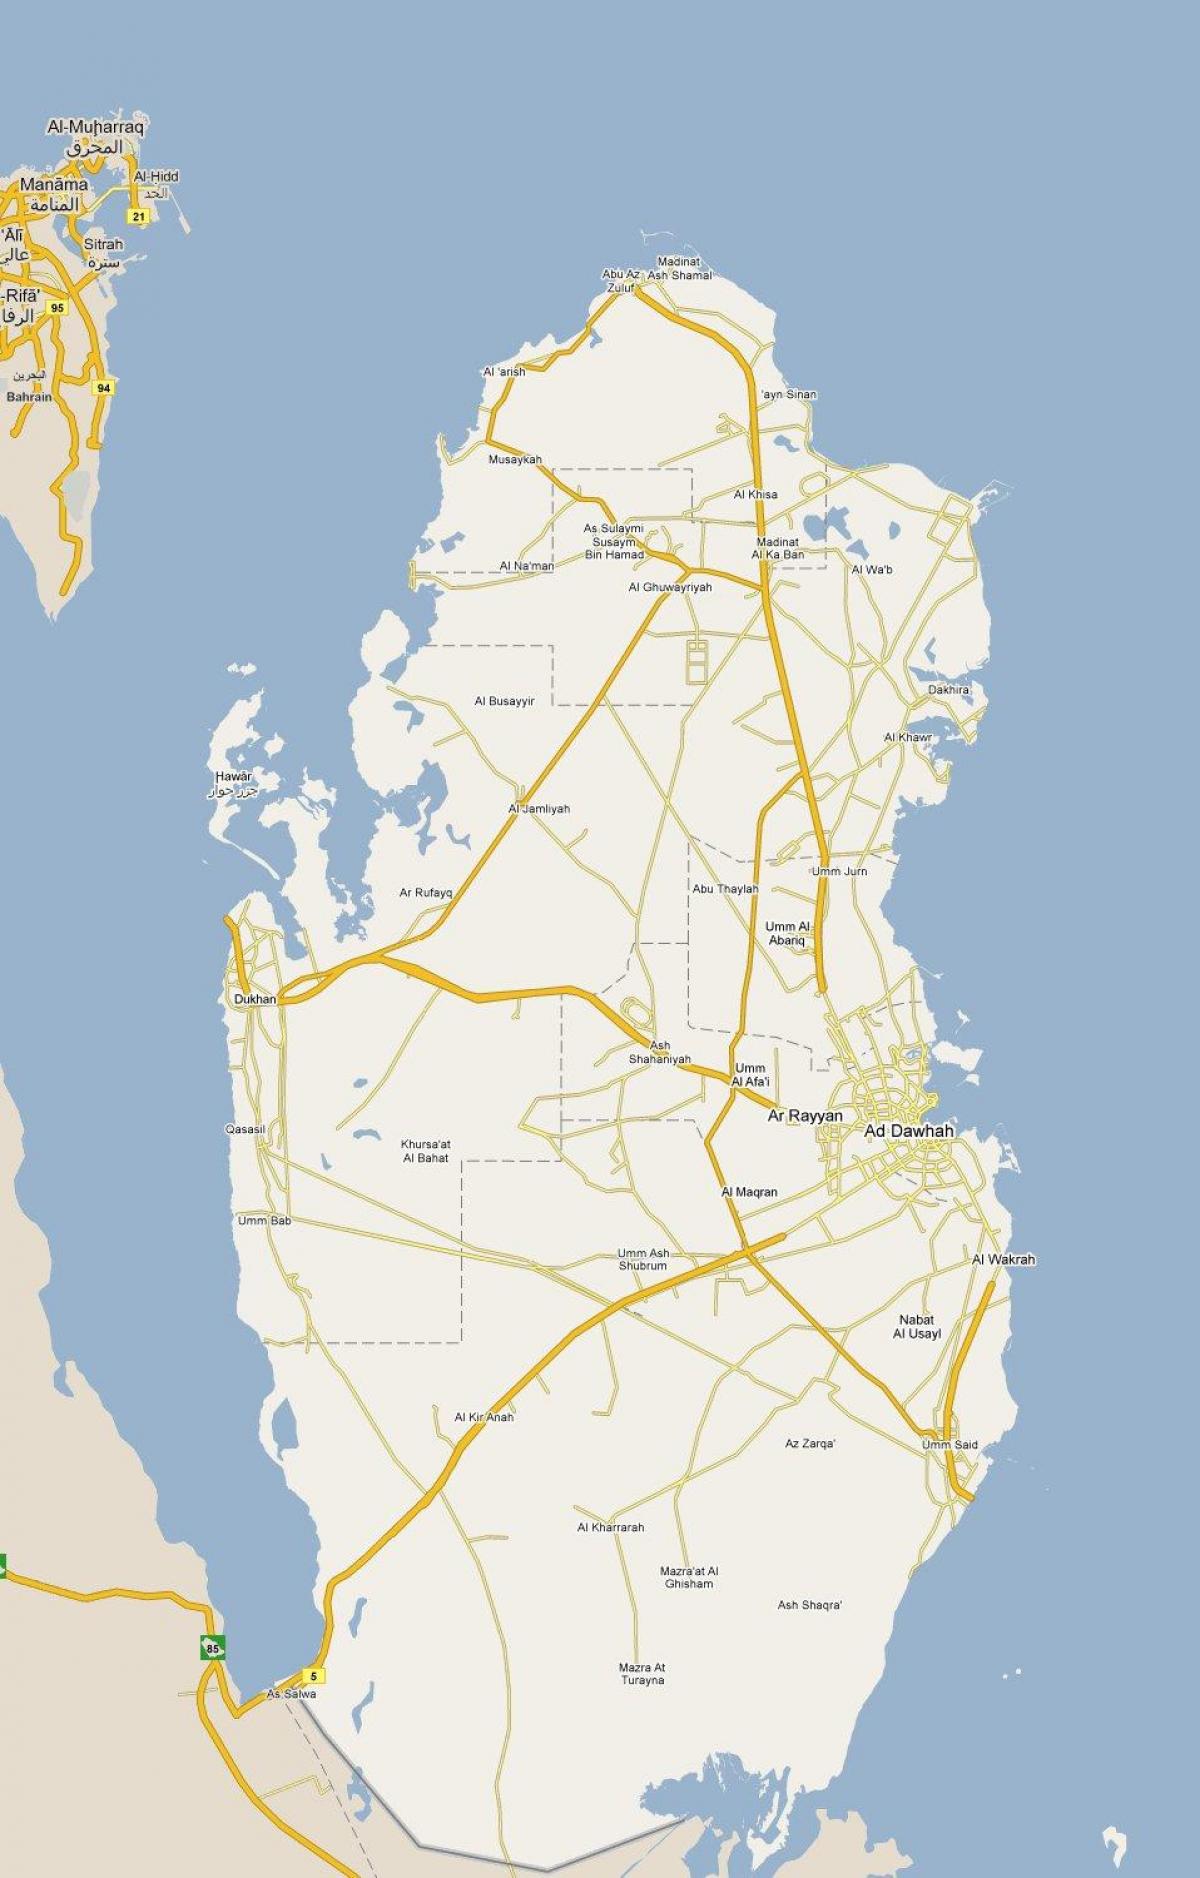 mapa na nagpapakita ng qatar